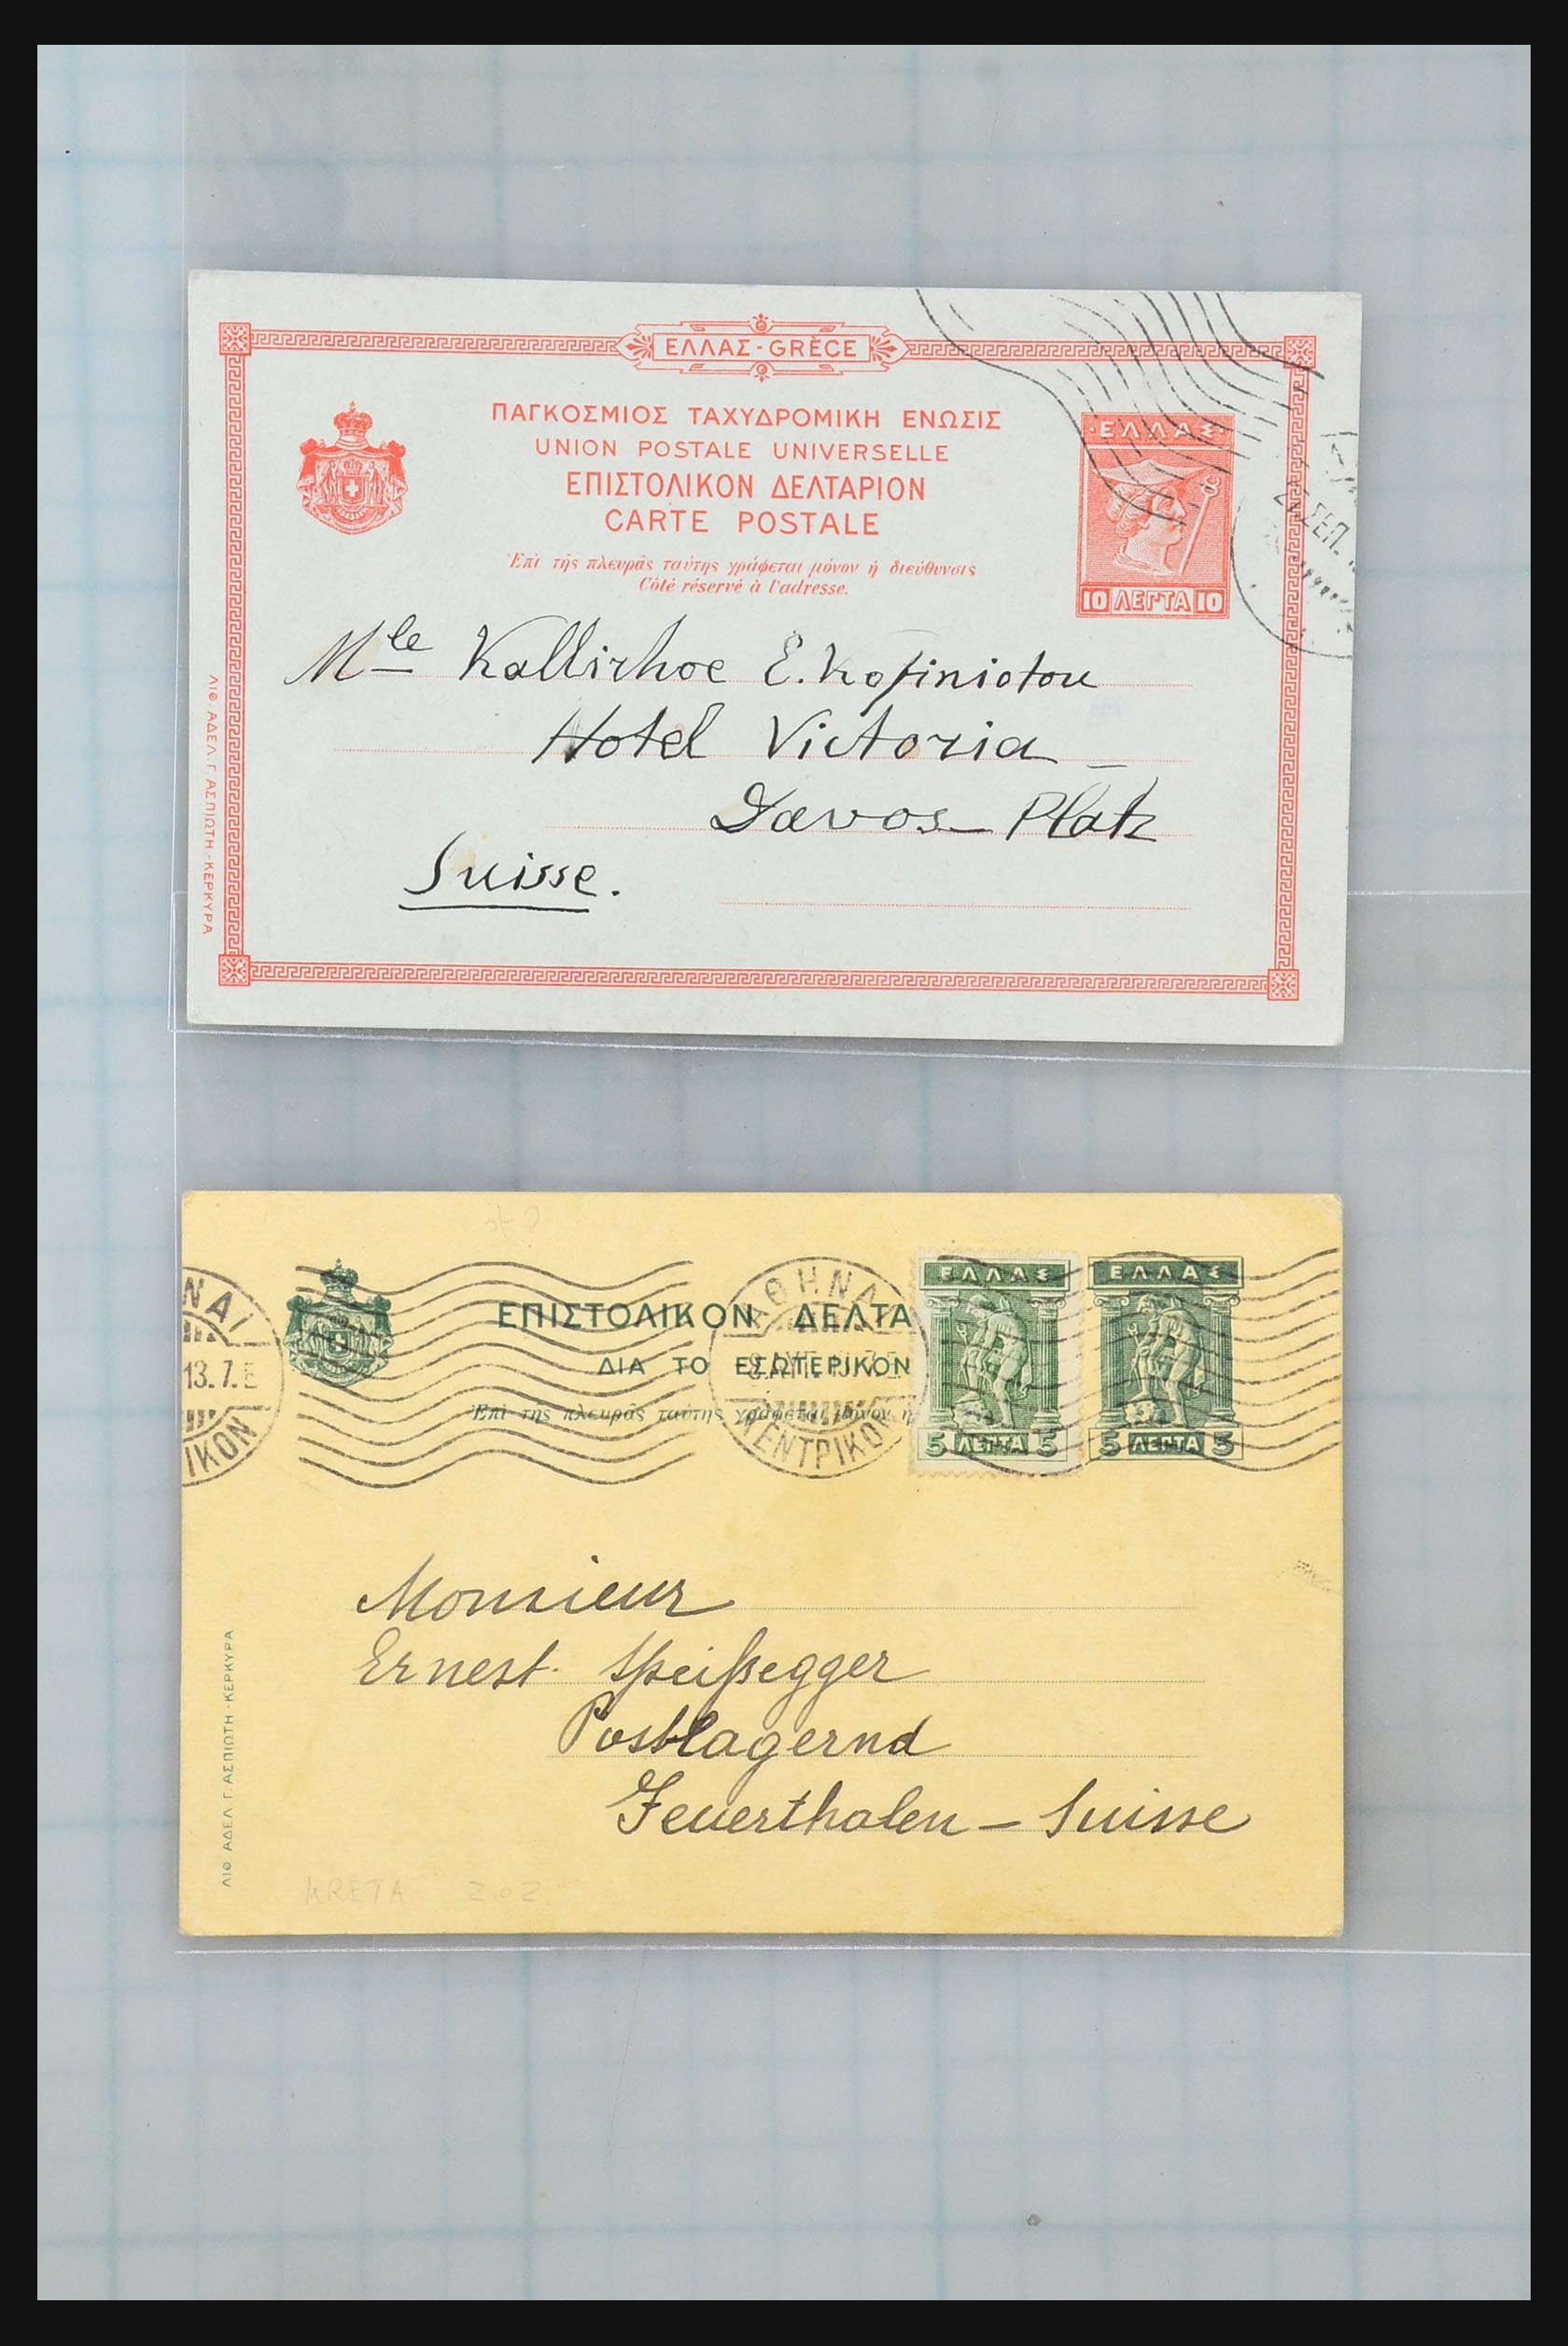 31358 030 - 31358 Portugal/Luxemburg/Griekenland brieven 1880-1960.